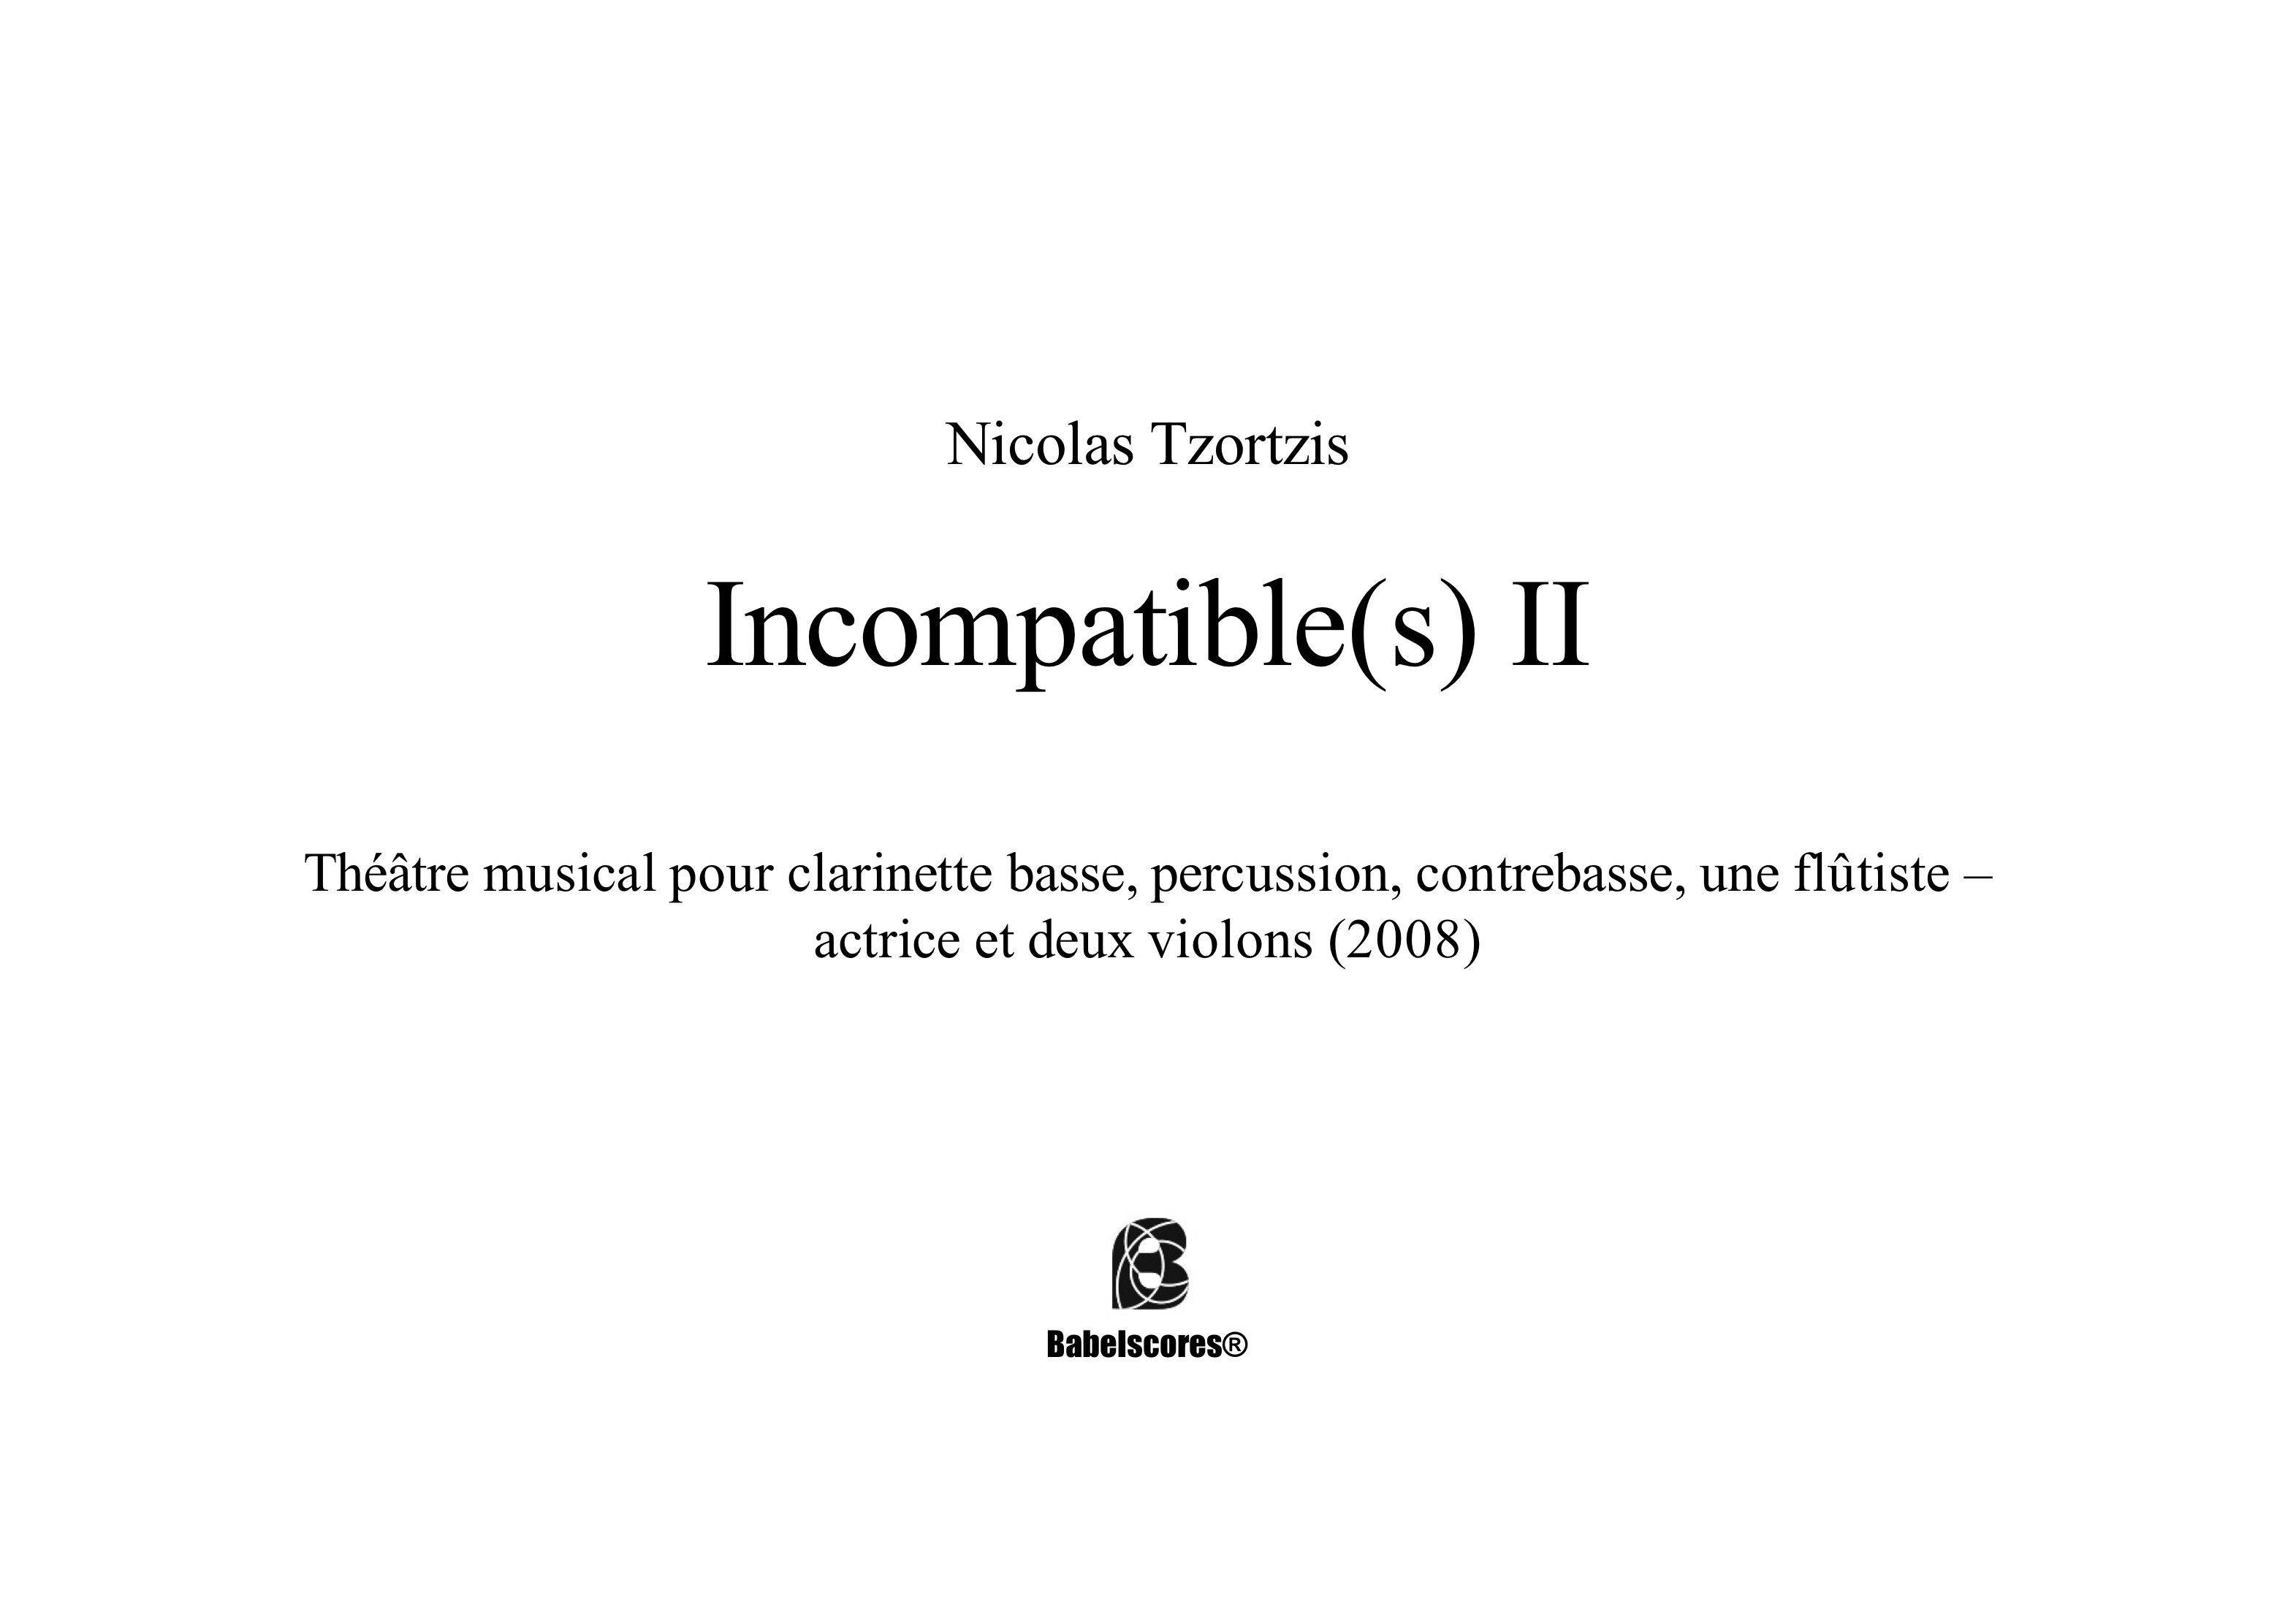 Incompatibles2 tzortzis_BS